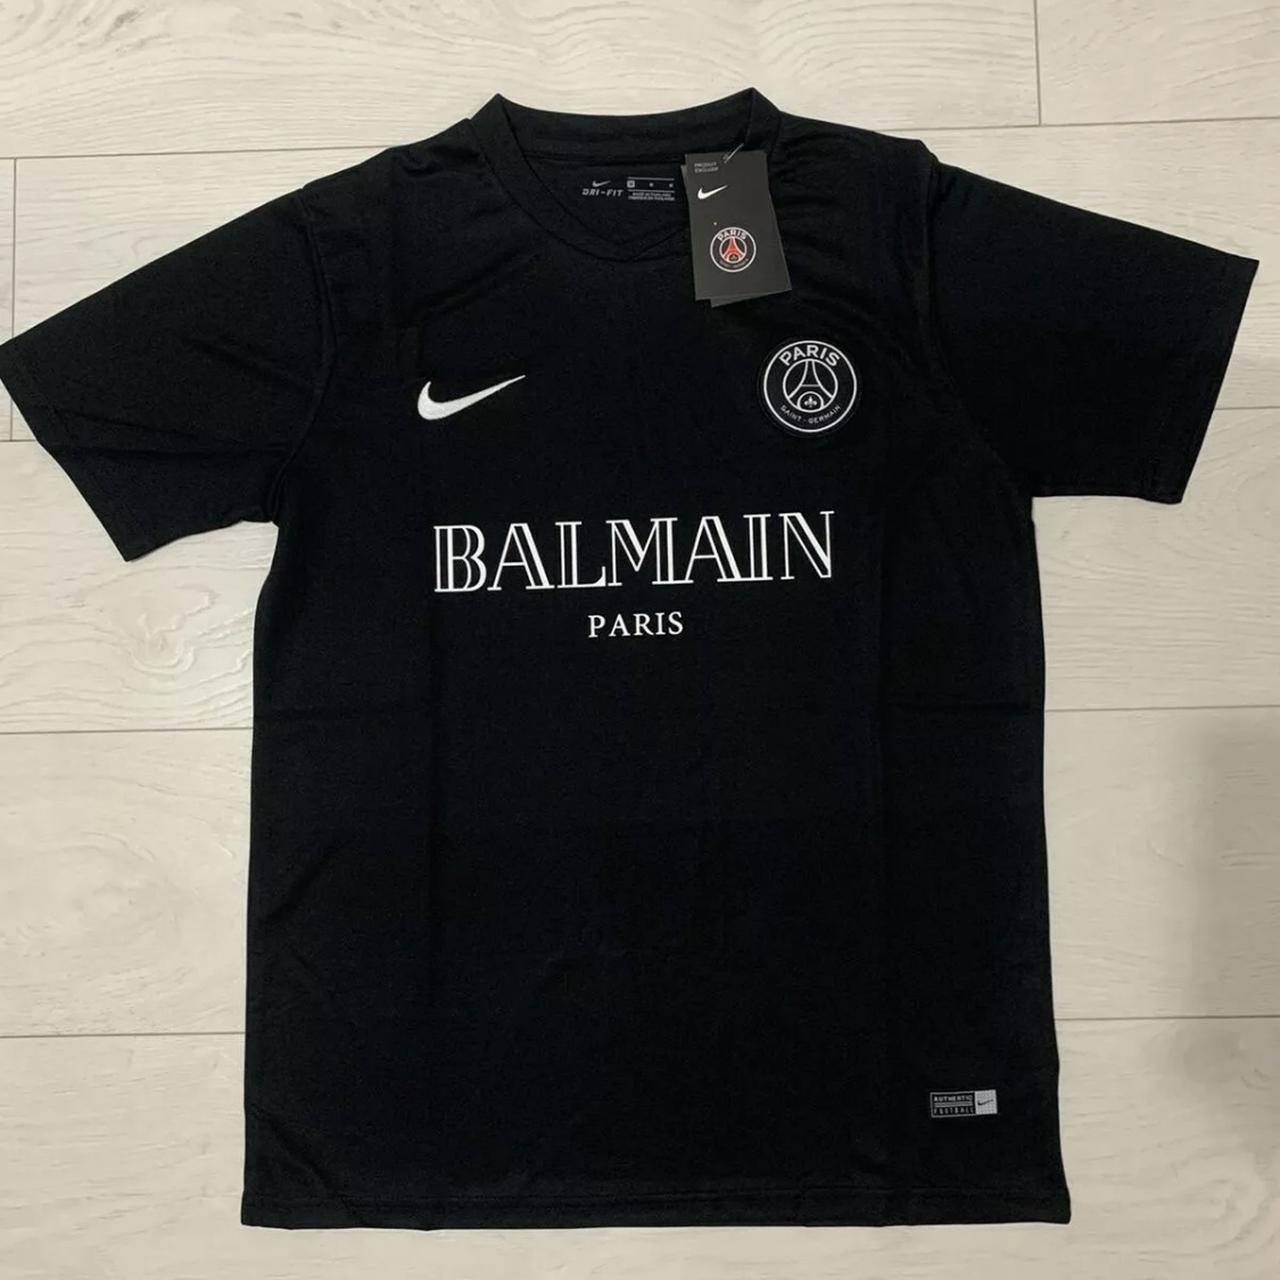 PSG x Balmain Shirt Available at thebalmainworld.com Free Shipping